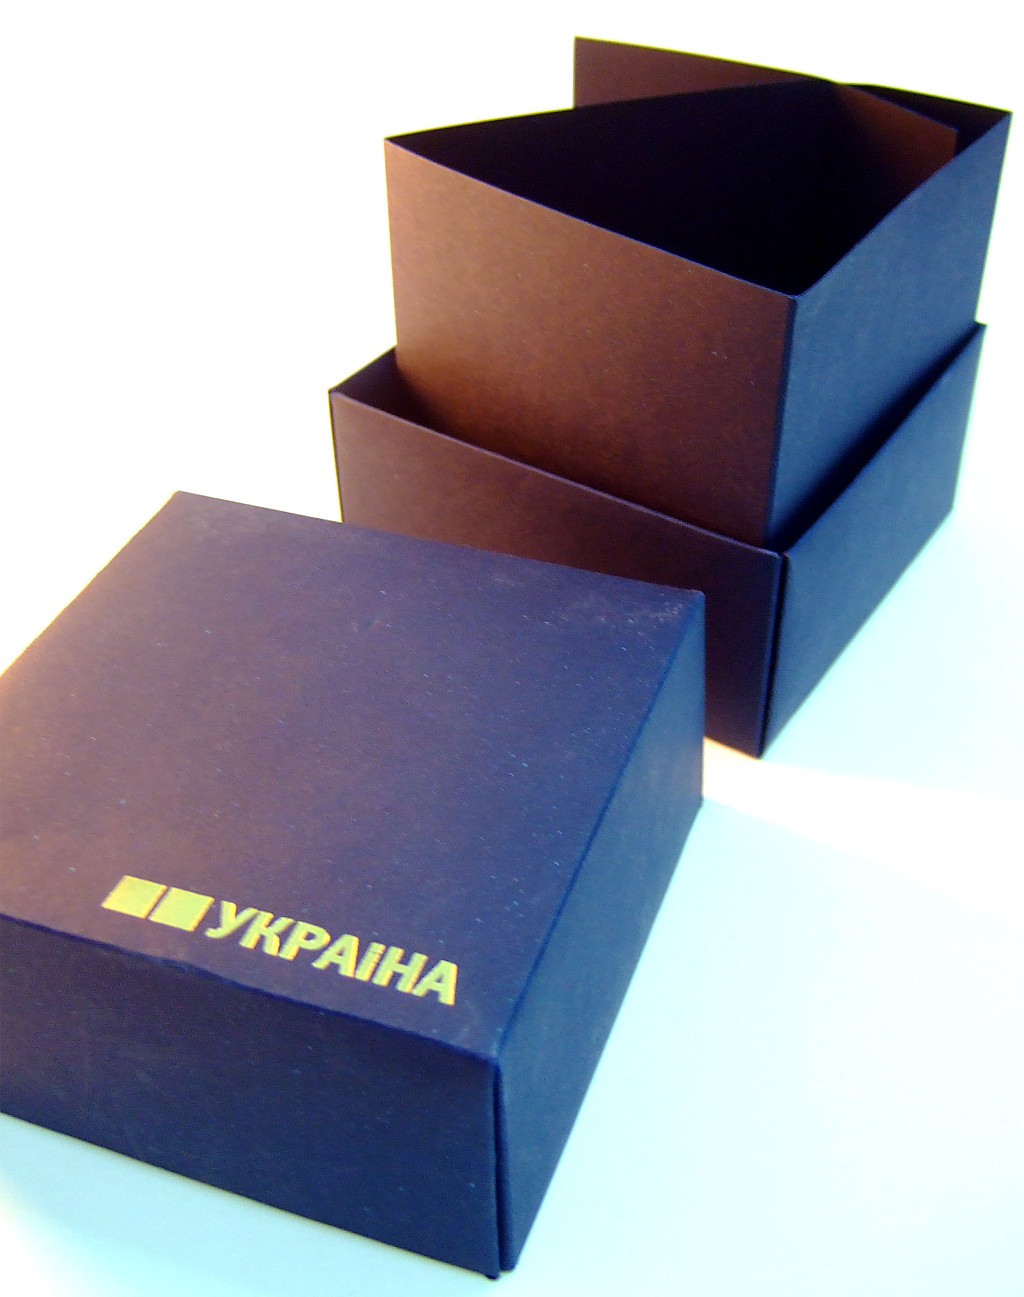 Друк упаковки «Україна». Поліграфія друкарні Макрос, виготовлення упаковки, специфікація 971997-3